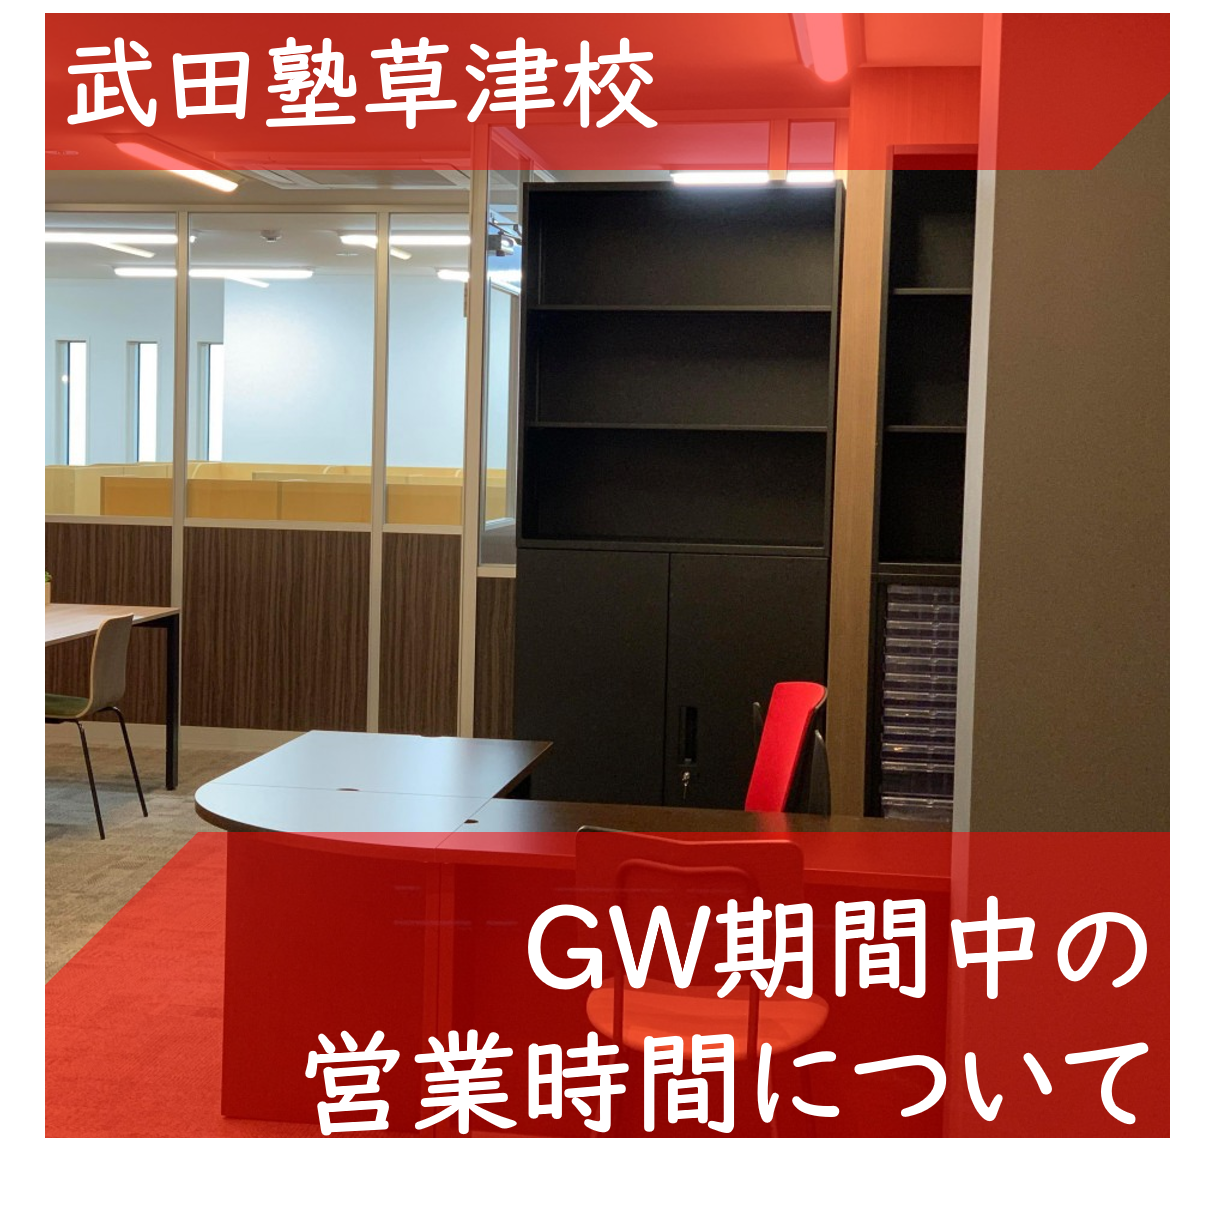 【武田塾草津校からのお知らせ】GW中の営業時間について